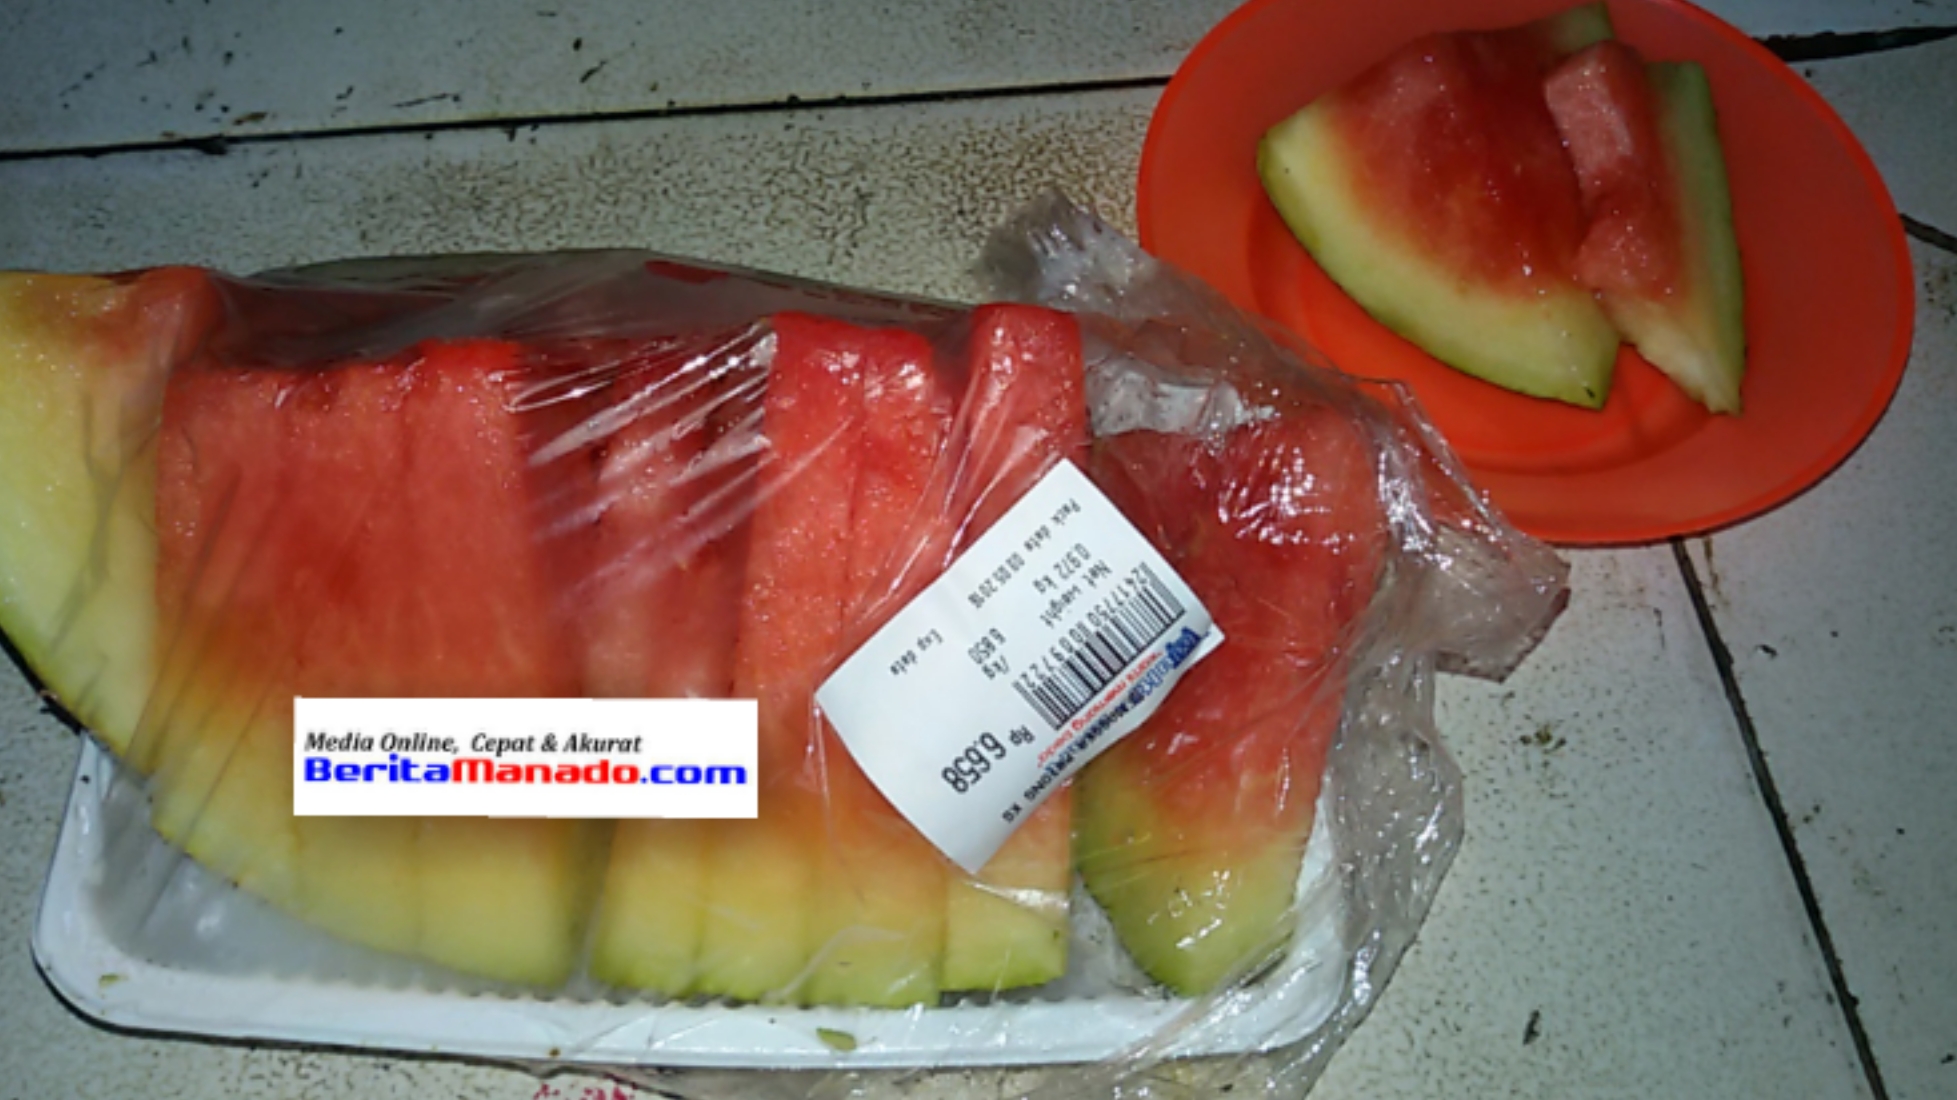 Buah semangka yang tak layak konsumsi berlabel Multimart